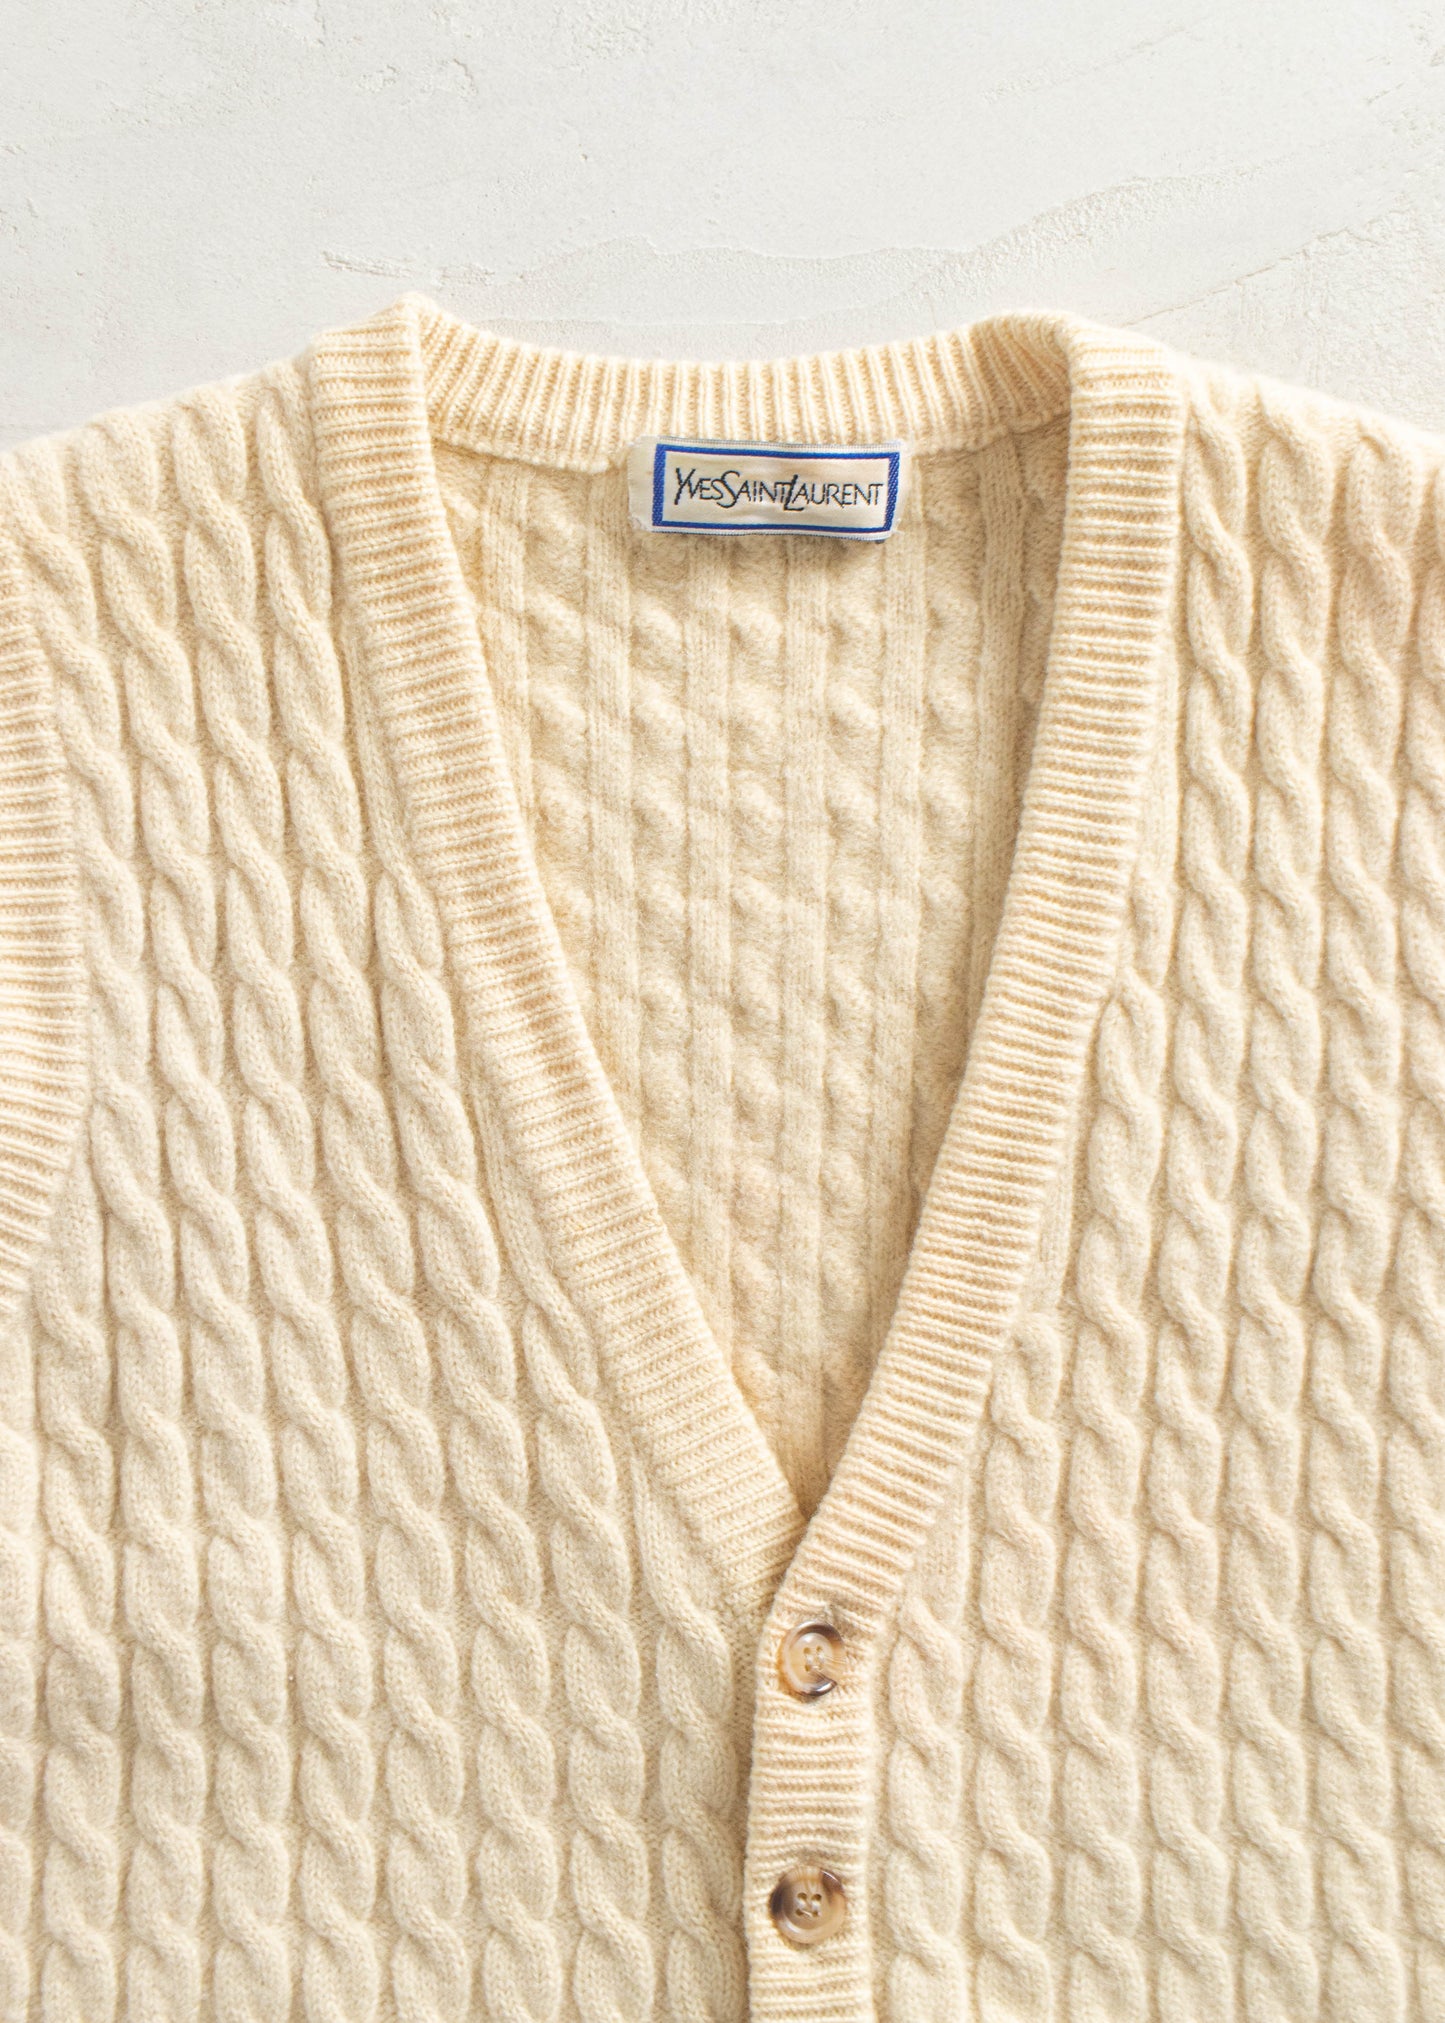 Vintage 1980s Yves Saint- Laurent Sweater Vest Size XS/S